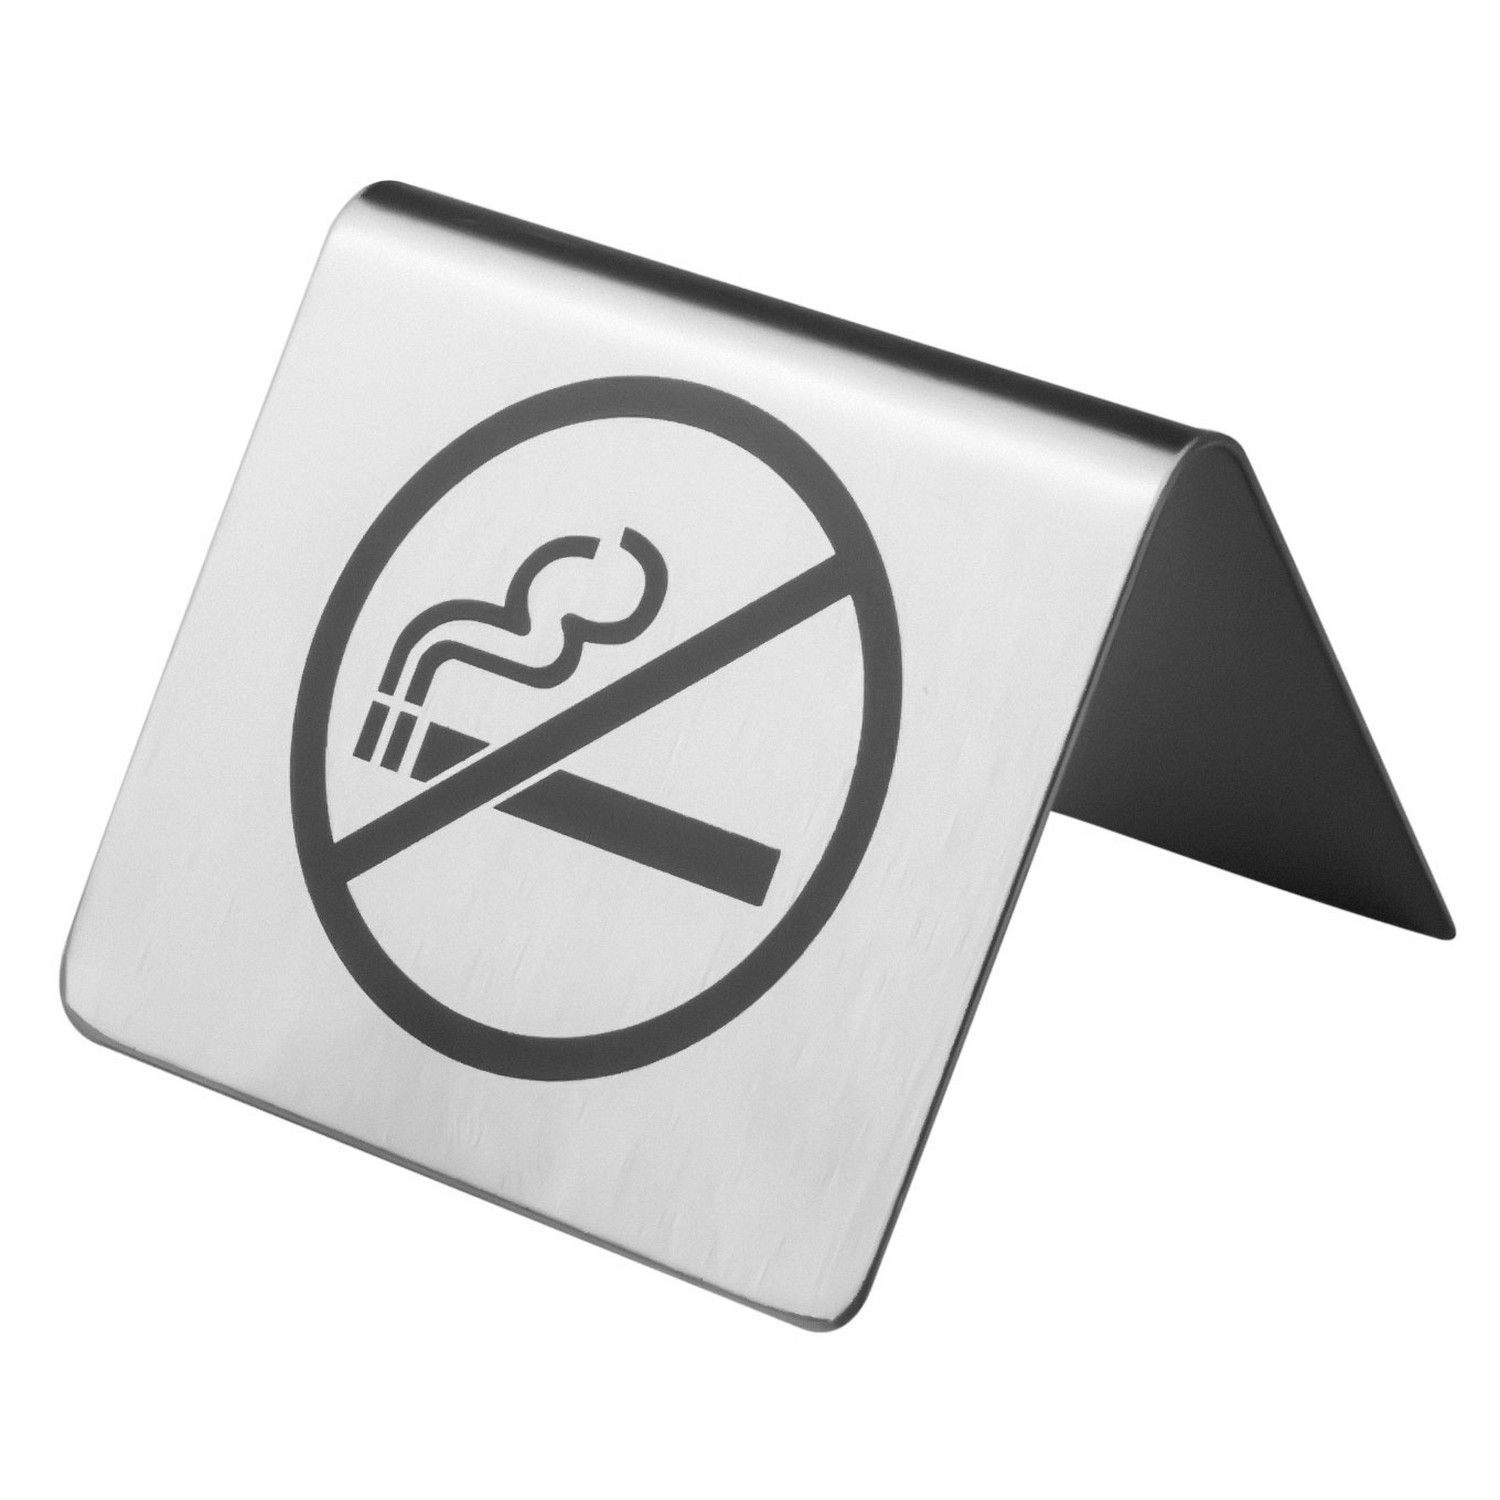 Табличка Prohotel Не курить 60х60х45мм нерж.сталь набор кондитерских инструментов для моделирования 7 предметов нержавеющая сталь